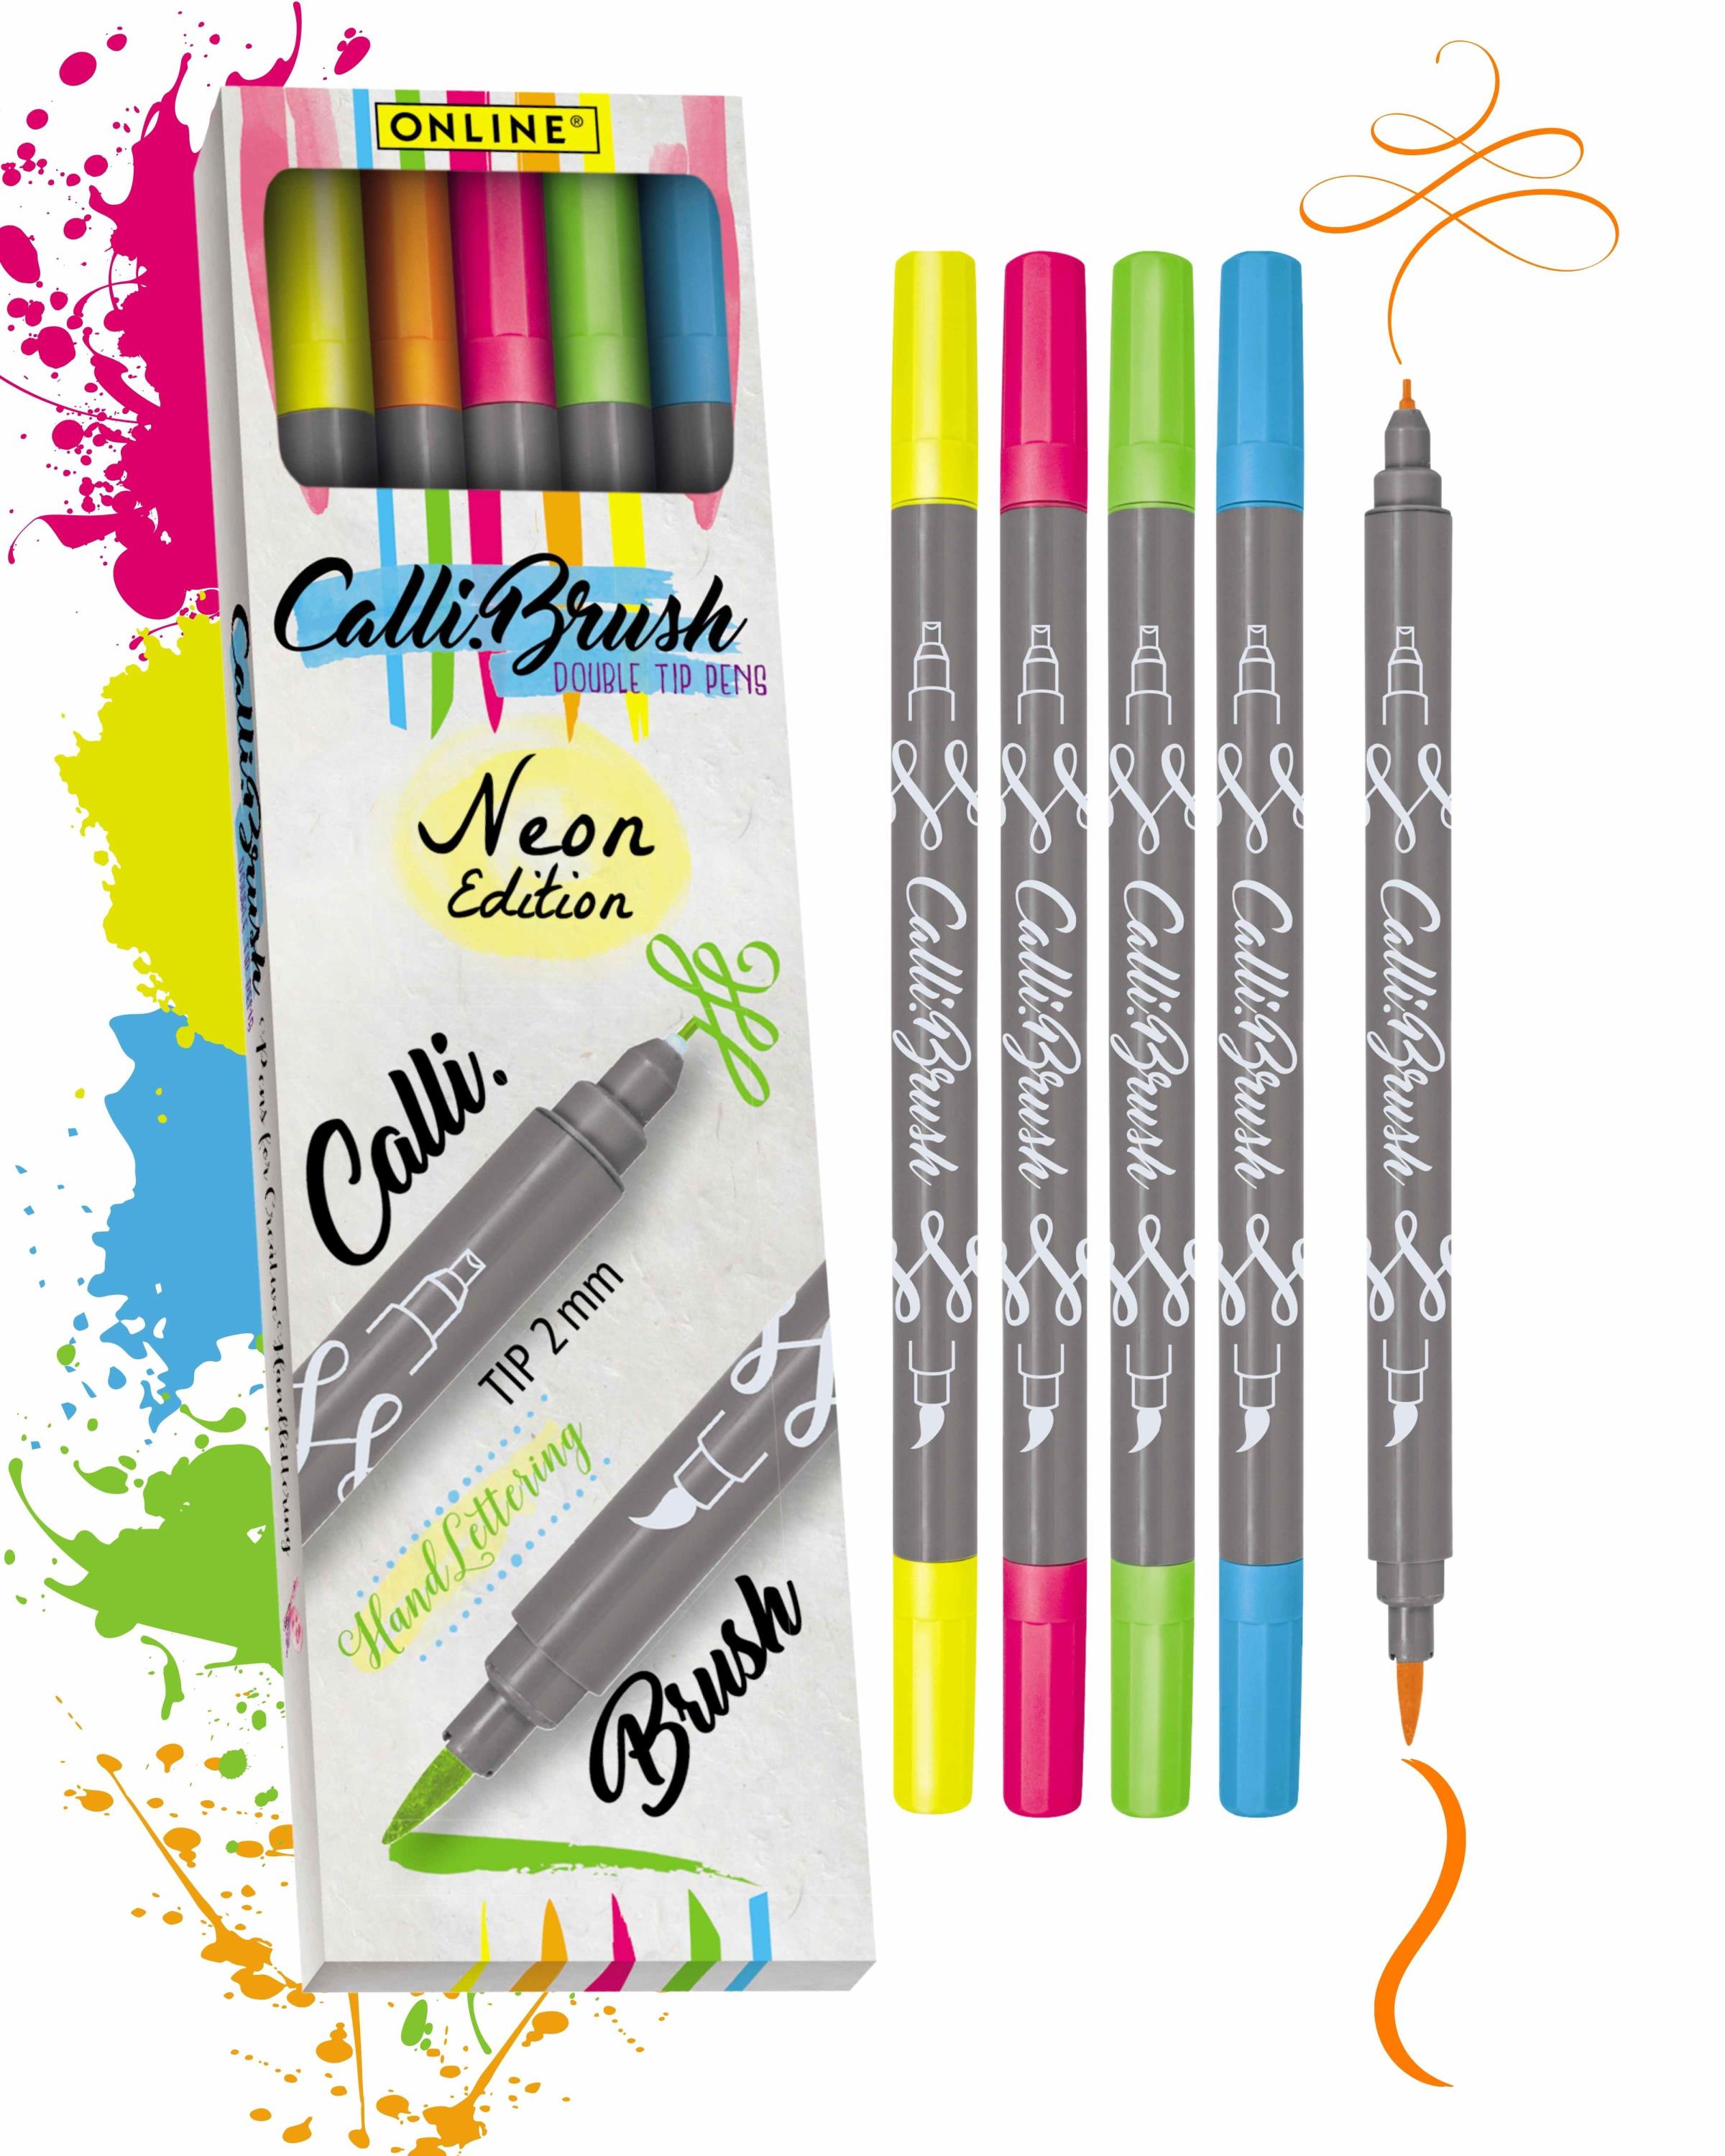 Calli.Brush Pens 5er Set Neon